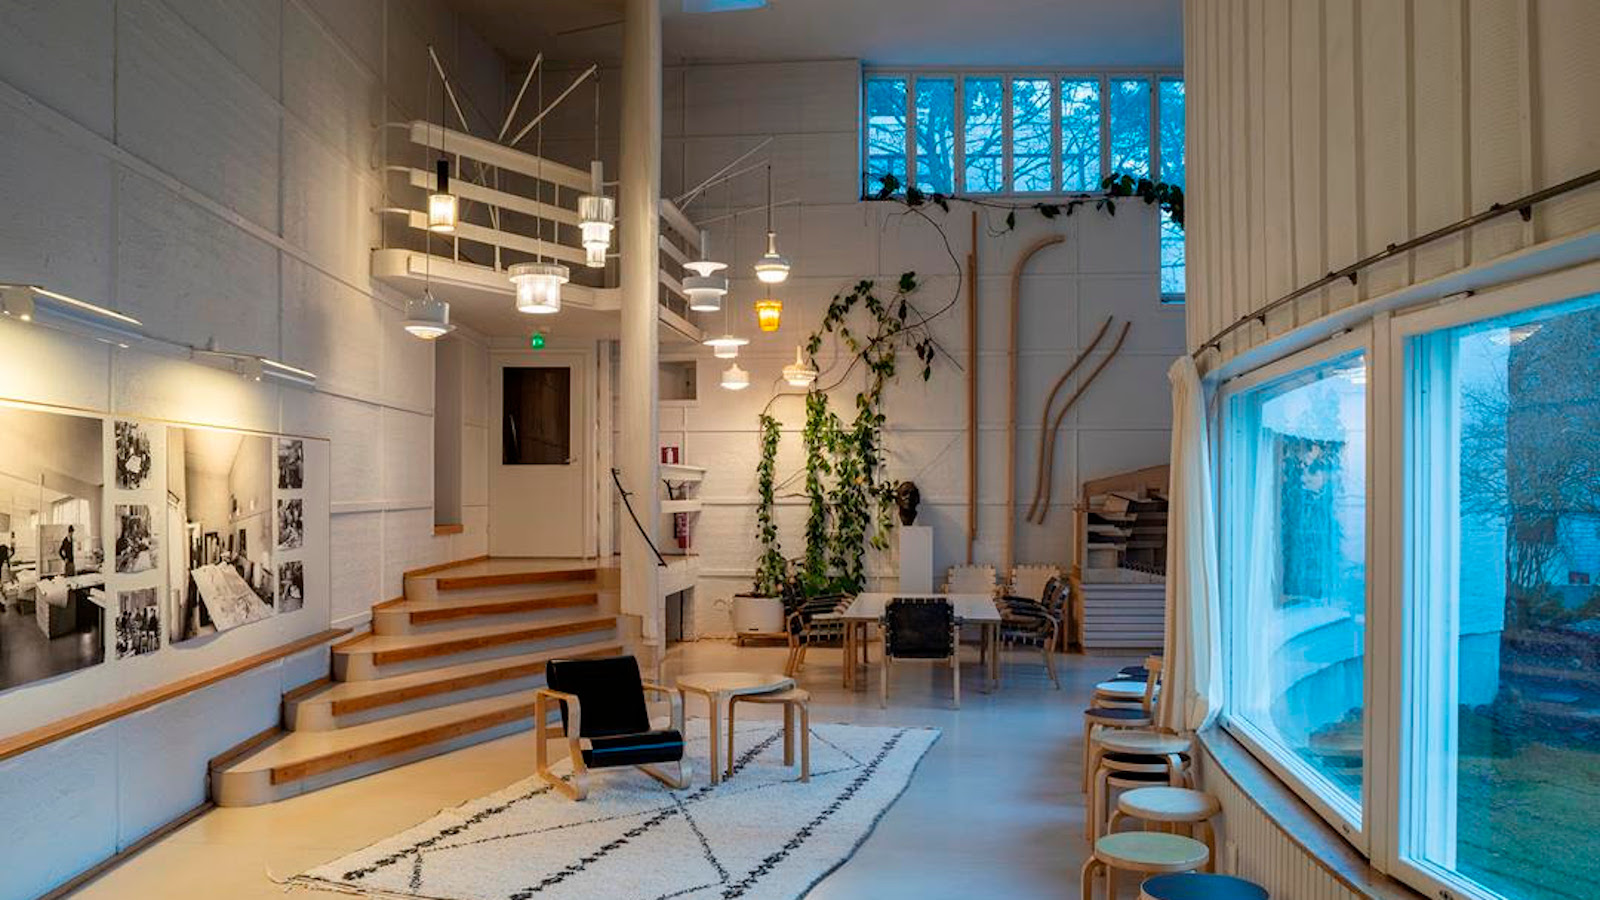 Kuvassa on Alvar Aallon ateljee, jossa on kierreportaat keskeltä huonetta yläkertaan.  Huoneessa on valkoisia sävyjä ja oikea seinä on puolipyöreä.